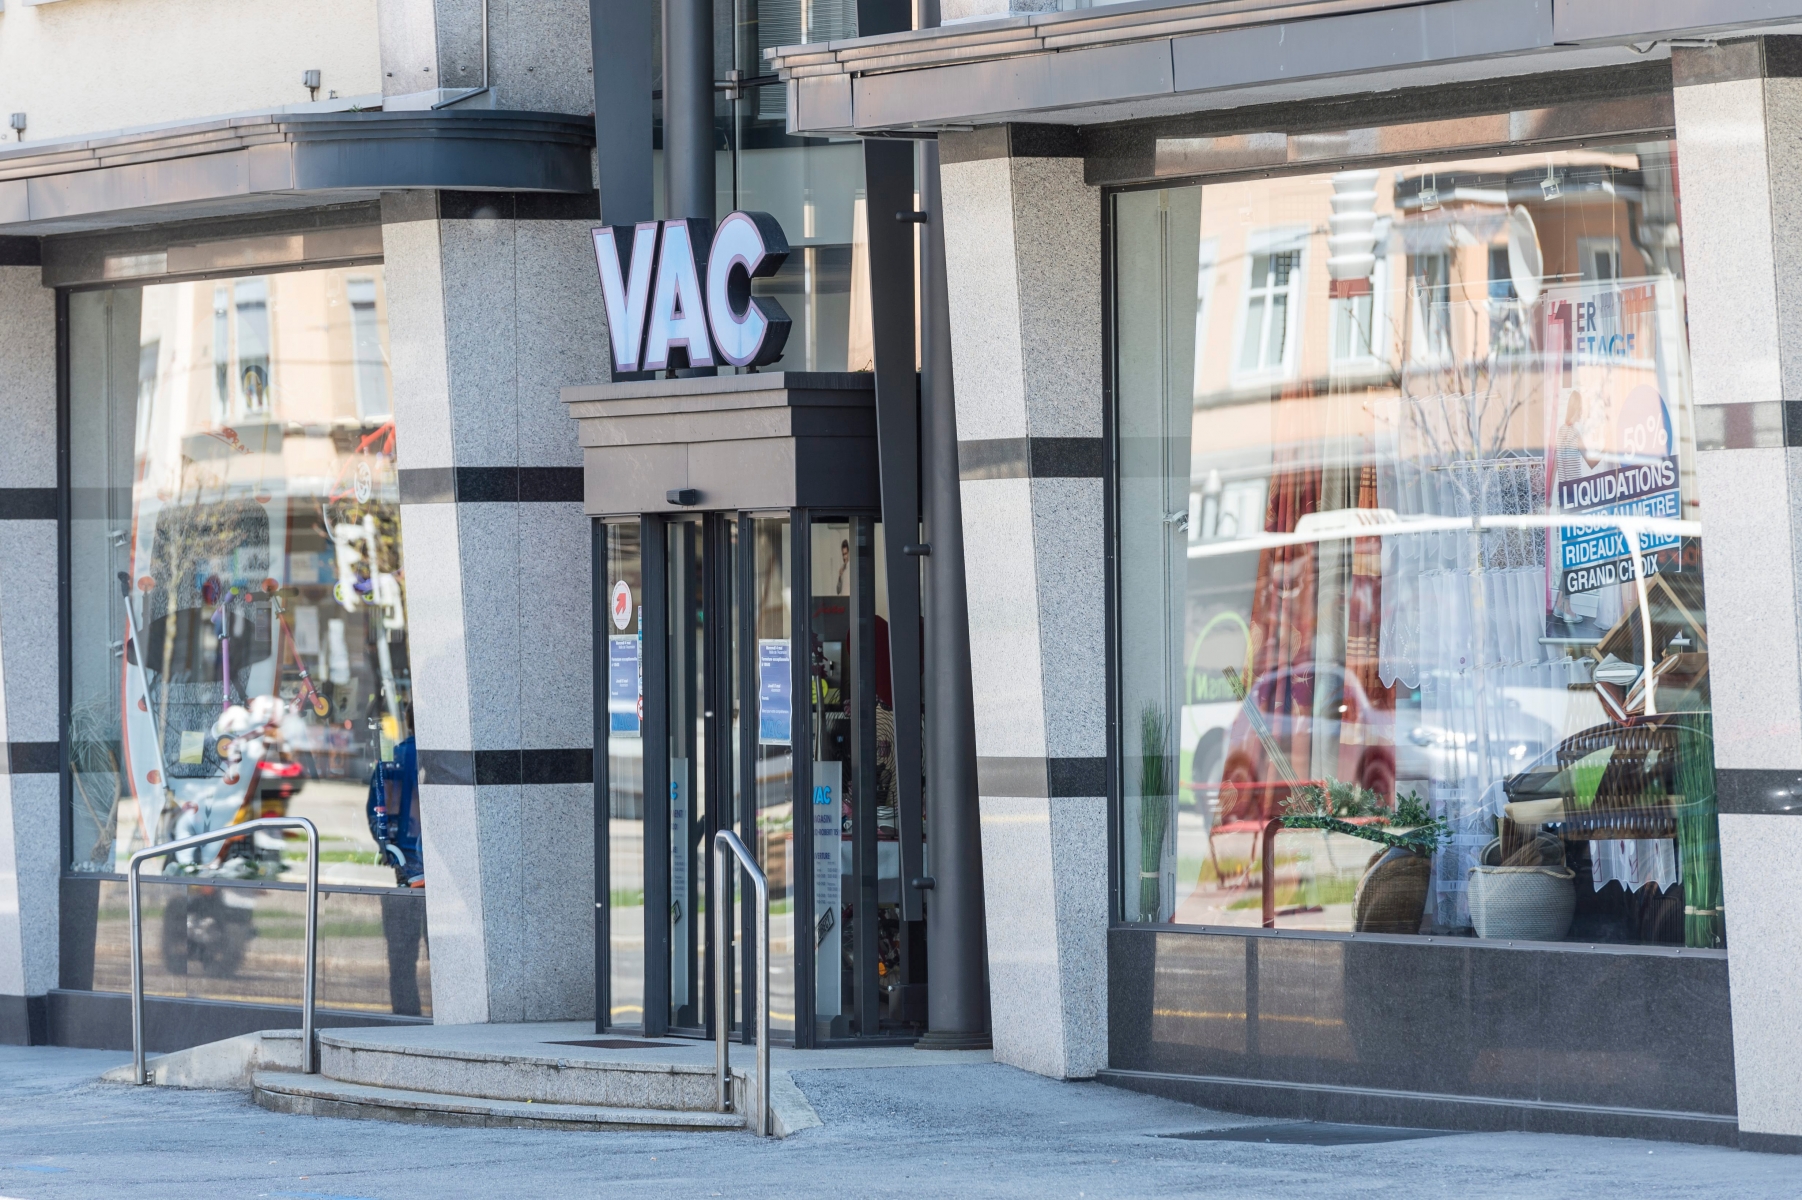 La societe VAC, un magasin de vente directe et par correspondance, installee a l'avenue Leopold-Robert 115

La Chaux-de-Fonds, le 6 mai 2016
Photo: Lucas Vuitel VENTE PAR CORRESPONDANCE